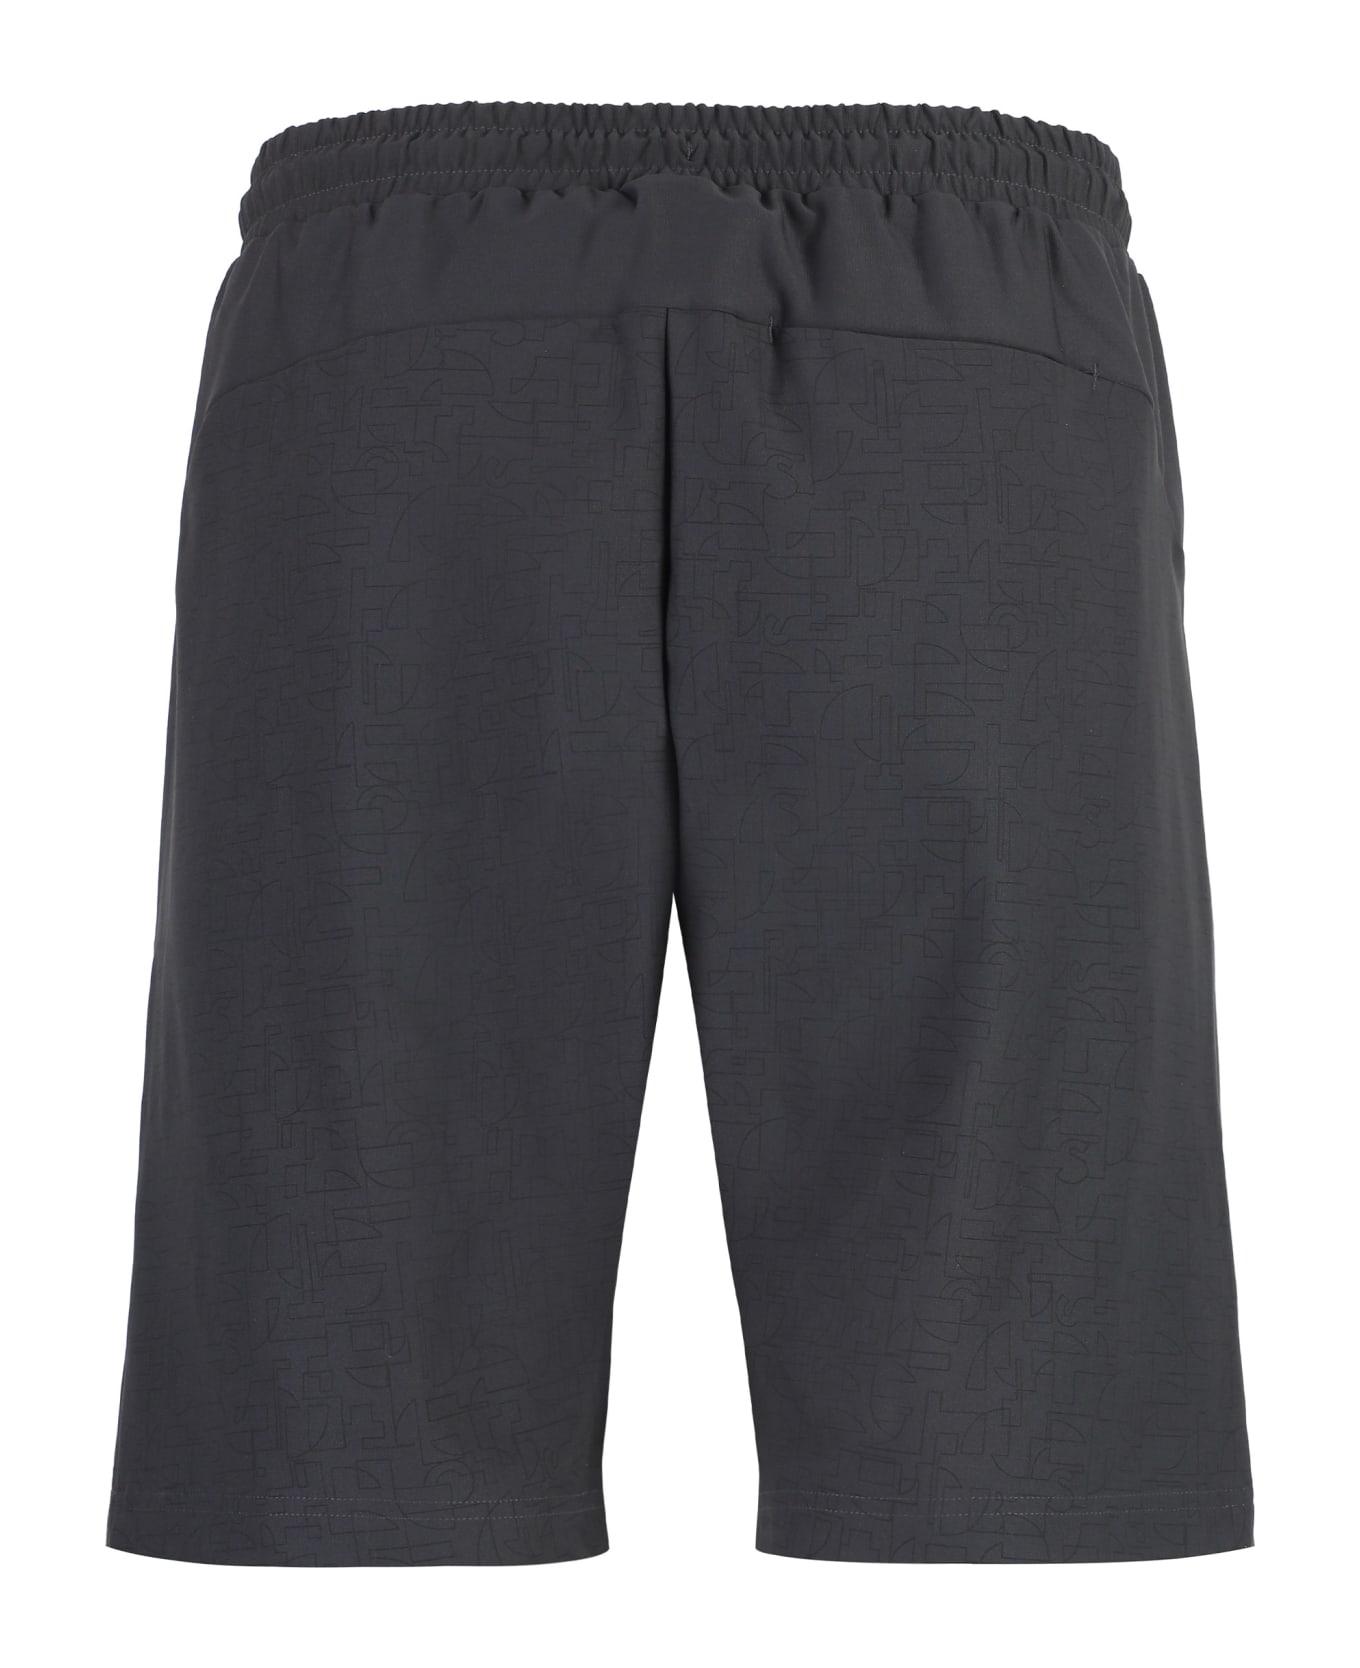 Hugo Boss Hecon Techno Fabric Bermuda-shorts - grey ショートパンツ